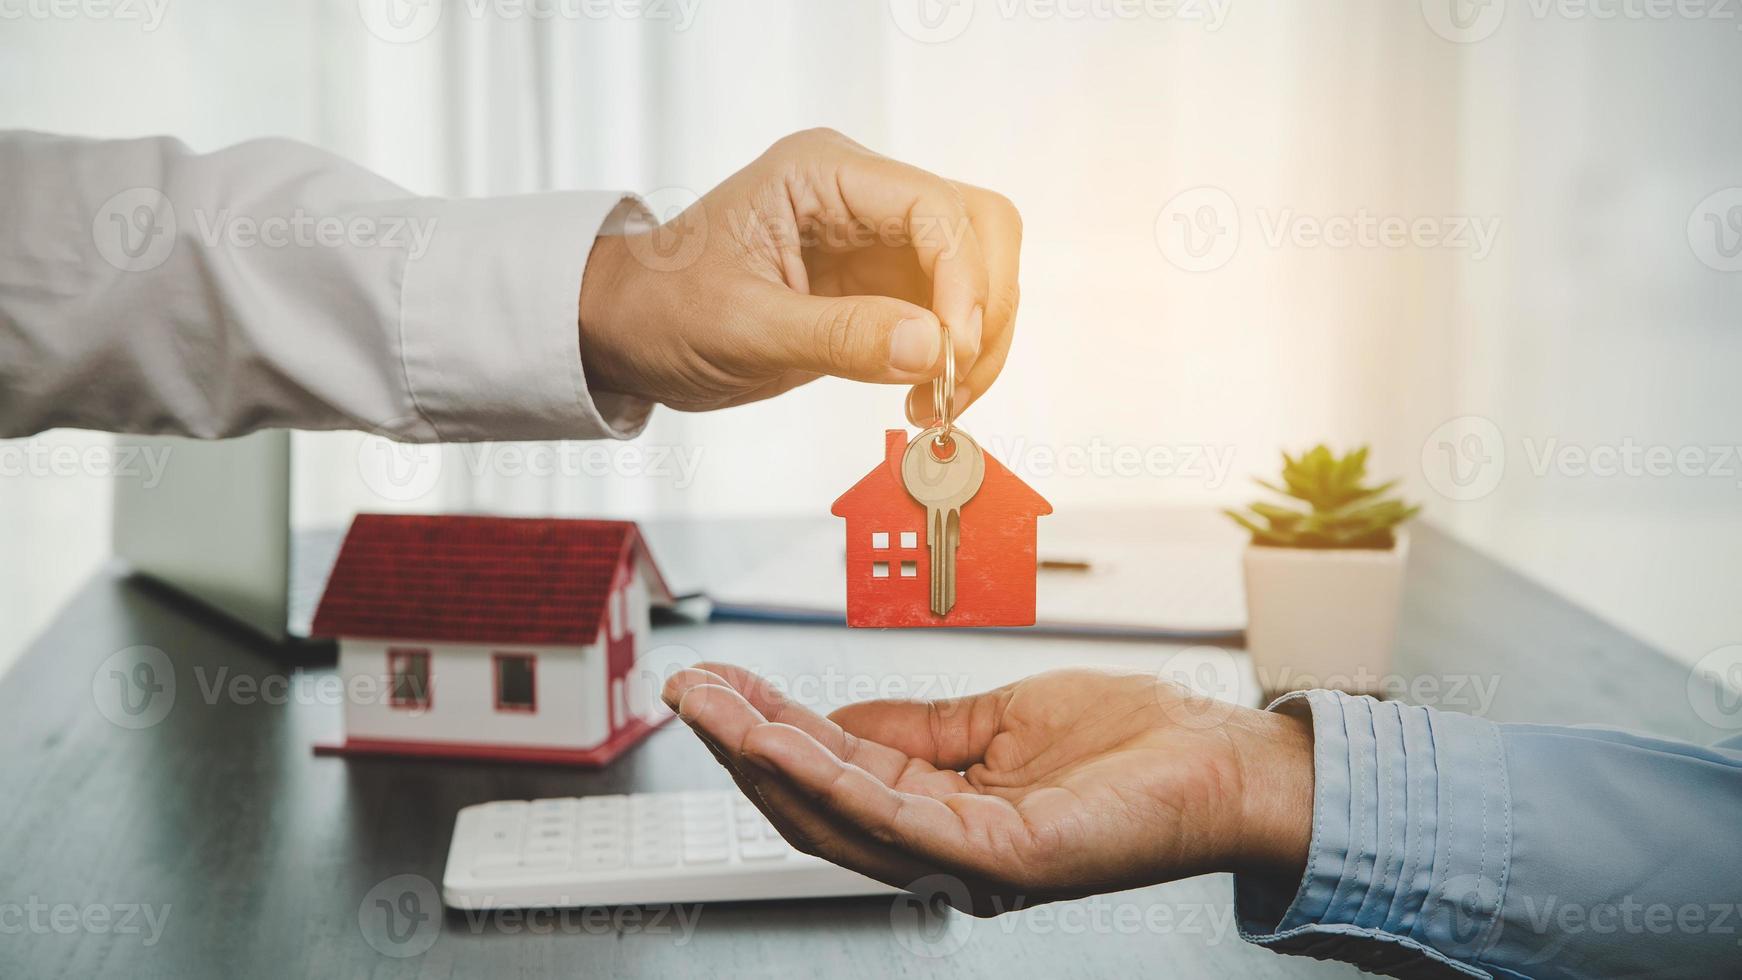 immobilienmakler, der seinem kunden nach unterzeichnung des vertrags den hausschlüssel hält, konzept für geschäftsdarlehen, investitionshypotheken, immobilien, umzug oder miete. foto